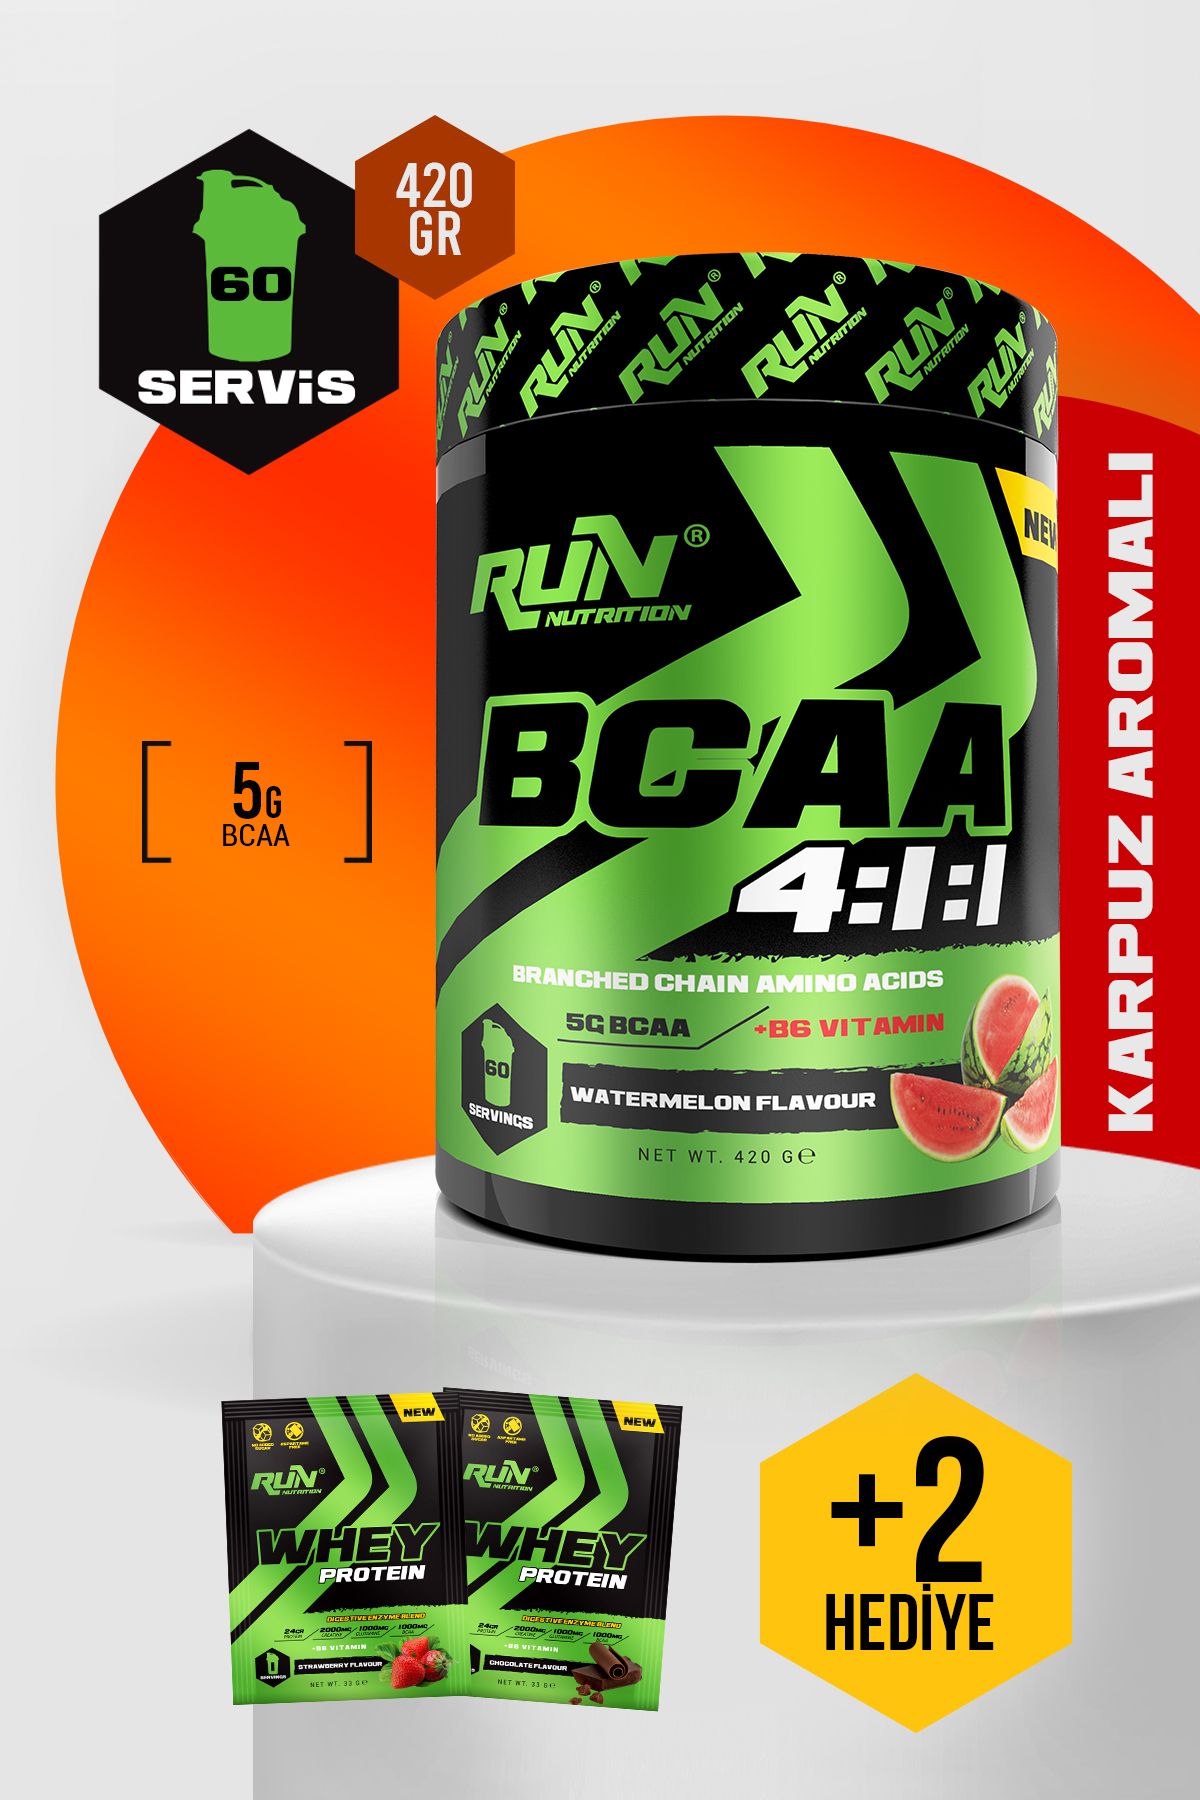 Run Nutrition Bcaa 4.1.1 - Karpuz Aromalı - 420 gr - 60 Servis - Hediyeli